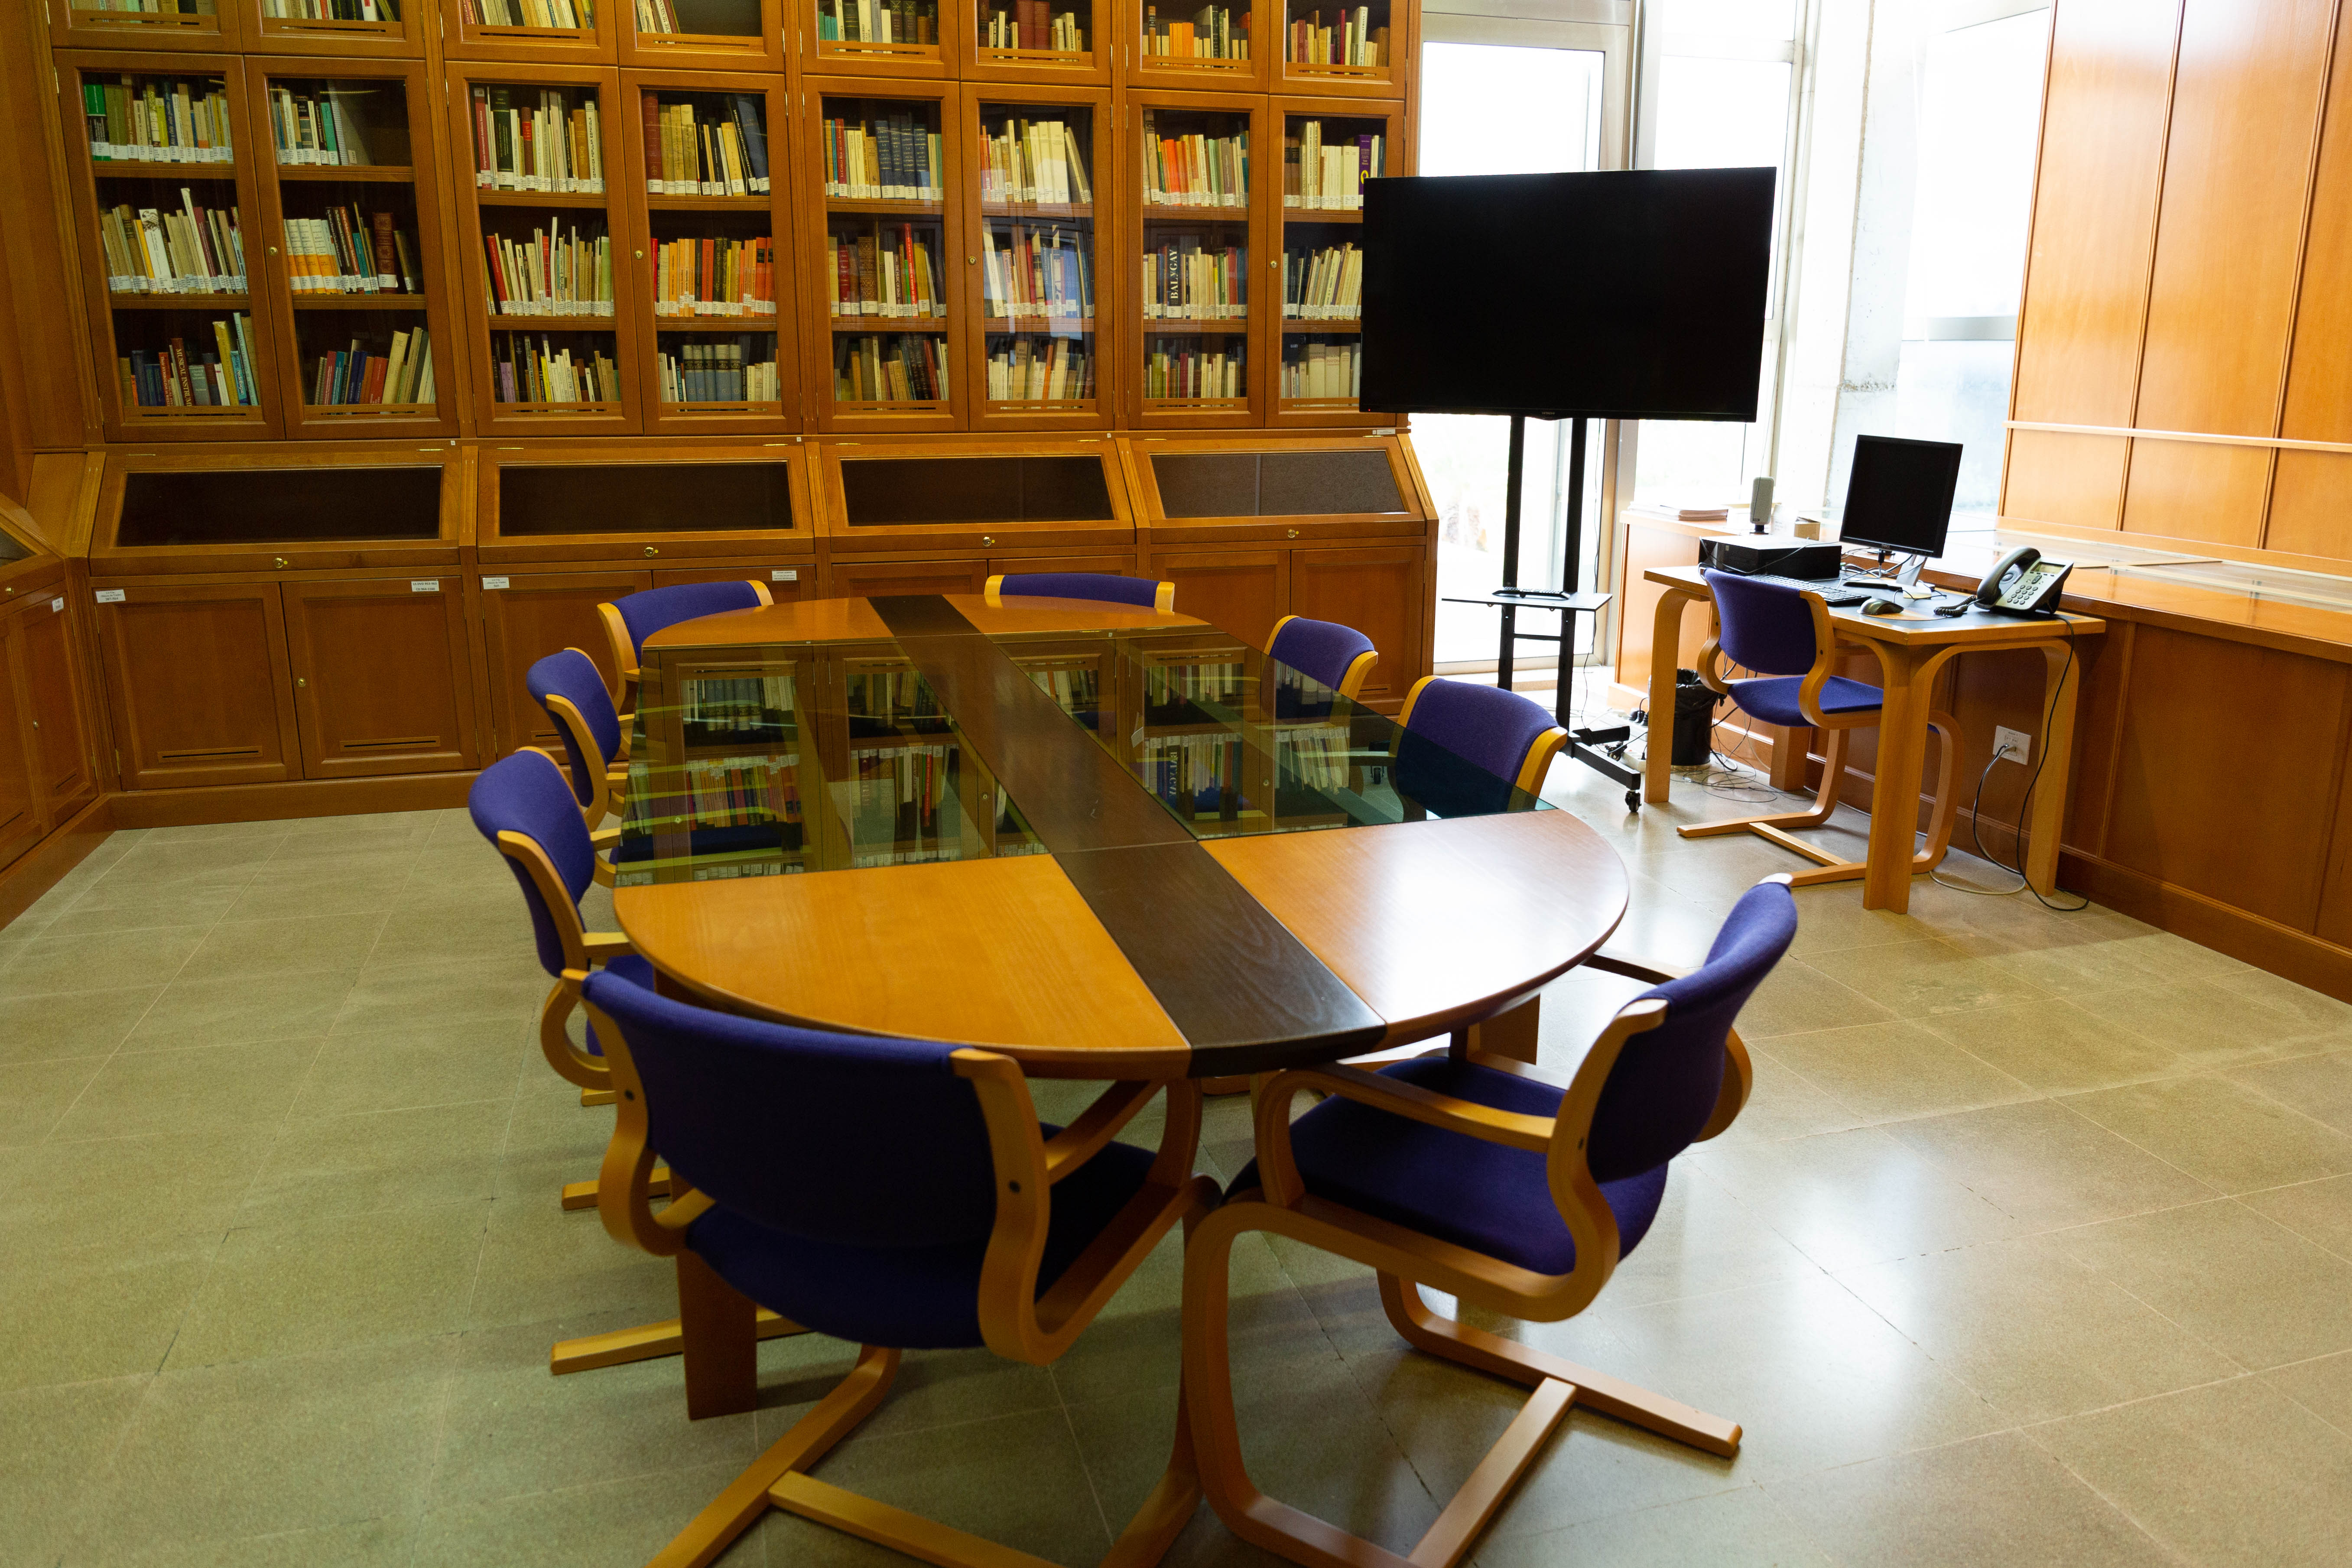 Vista de una sala con anaqueles repletos de libros tras vitrinas, una mesa de madera y cristal con 8 asientos a su alrededor, una pantalla gigante y una mesa auxiliar con ordenador y teléfono.